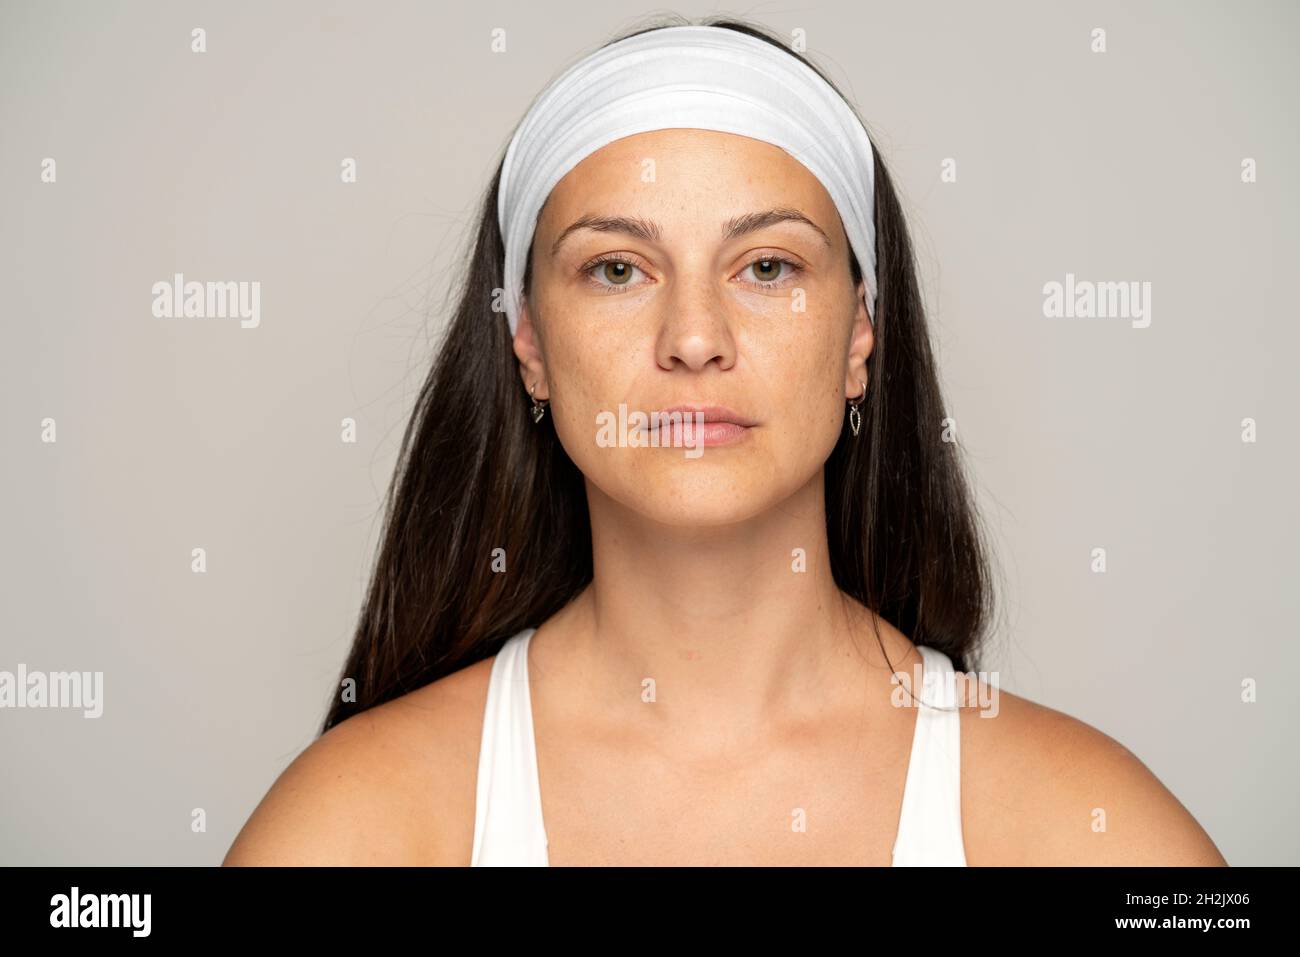 Portrait d'une jeune femme sans maquillage sur fond gris Banque D'Images